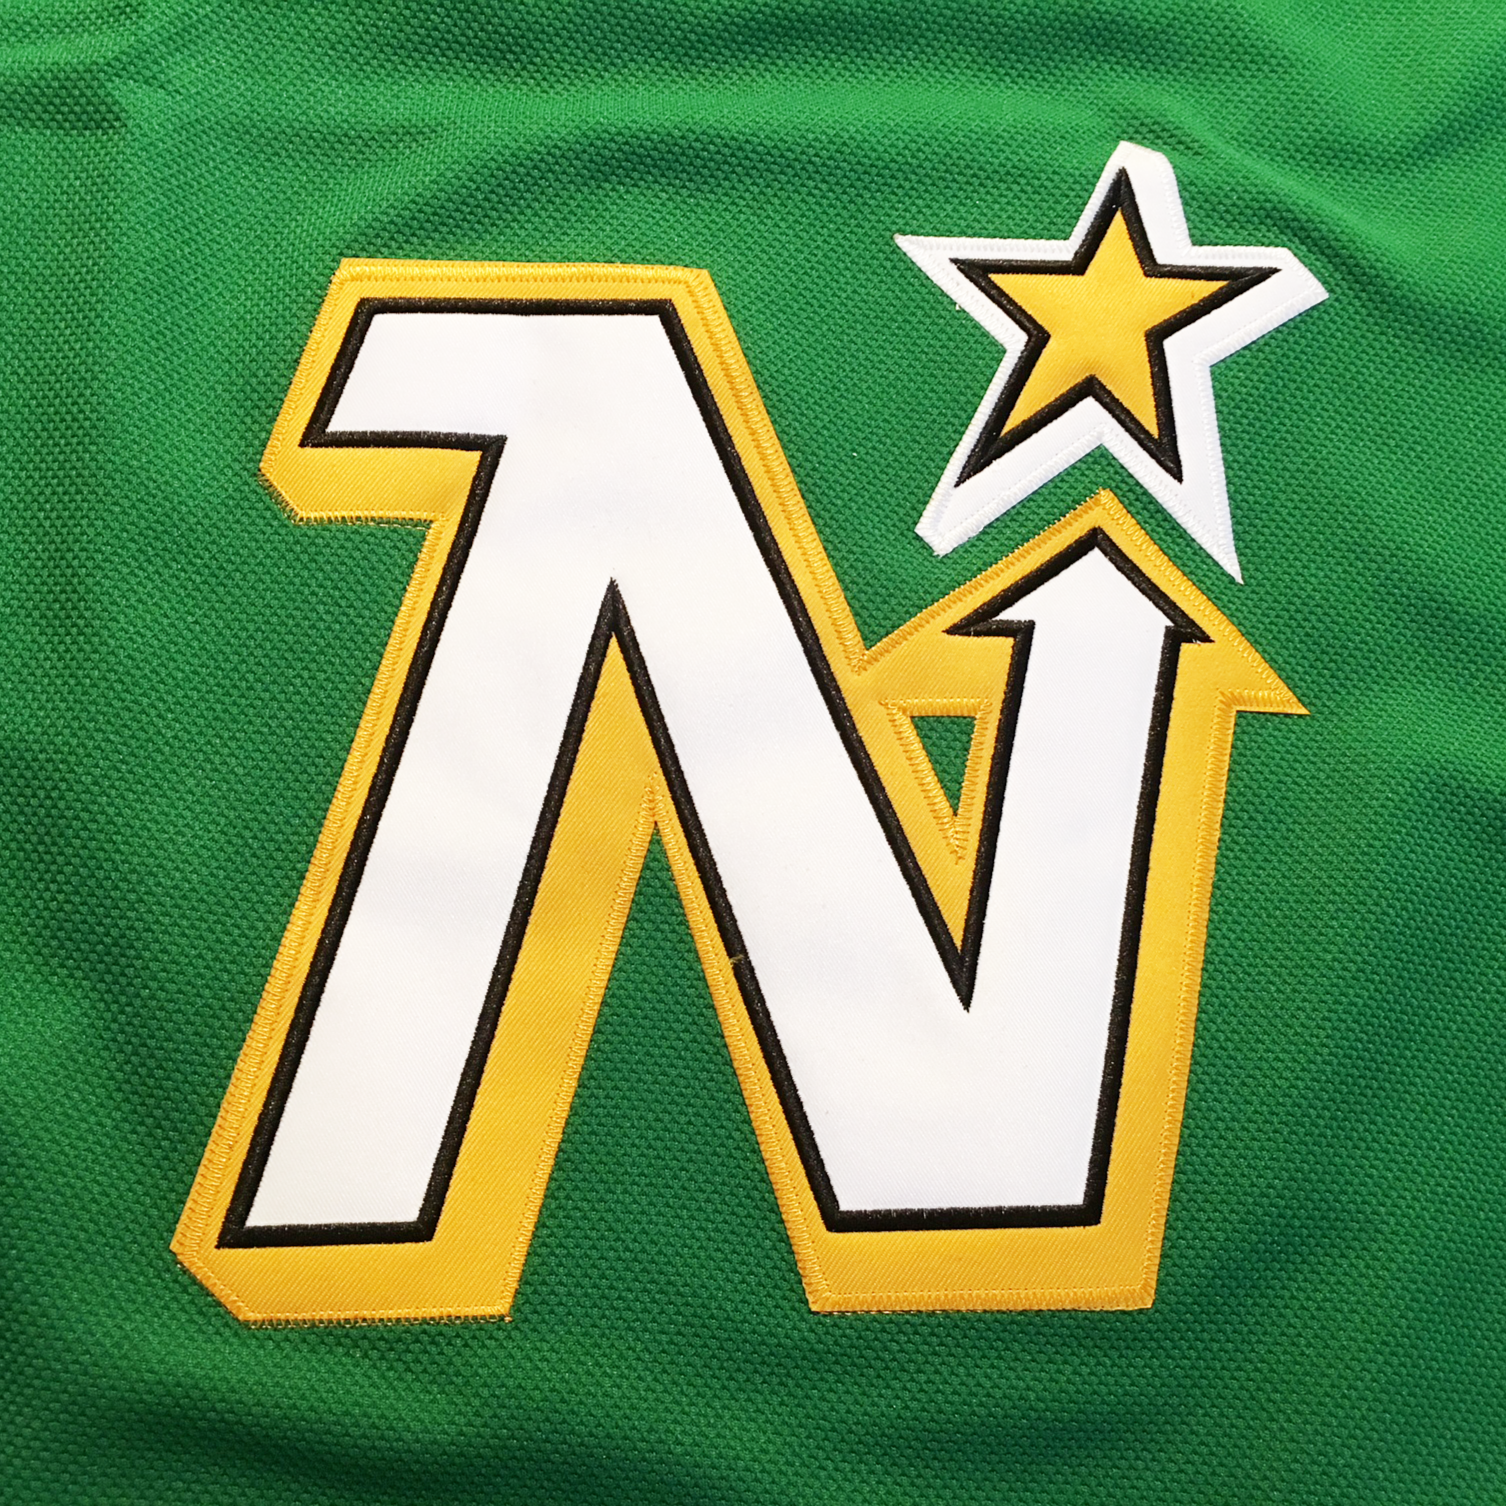 Men's hockey jerseys Dallas Stars jerseys Minnesota North Star #9